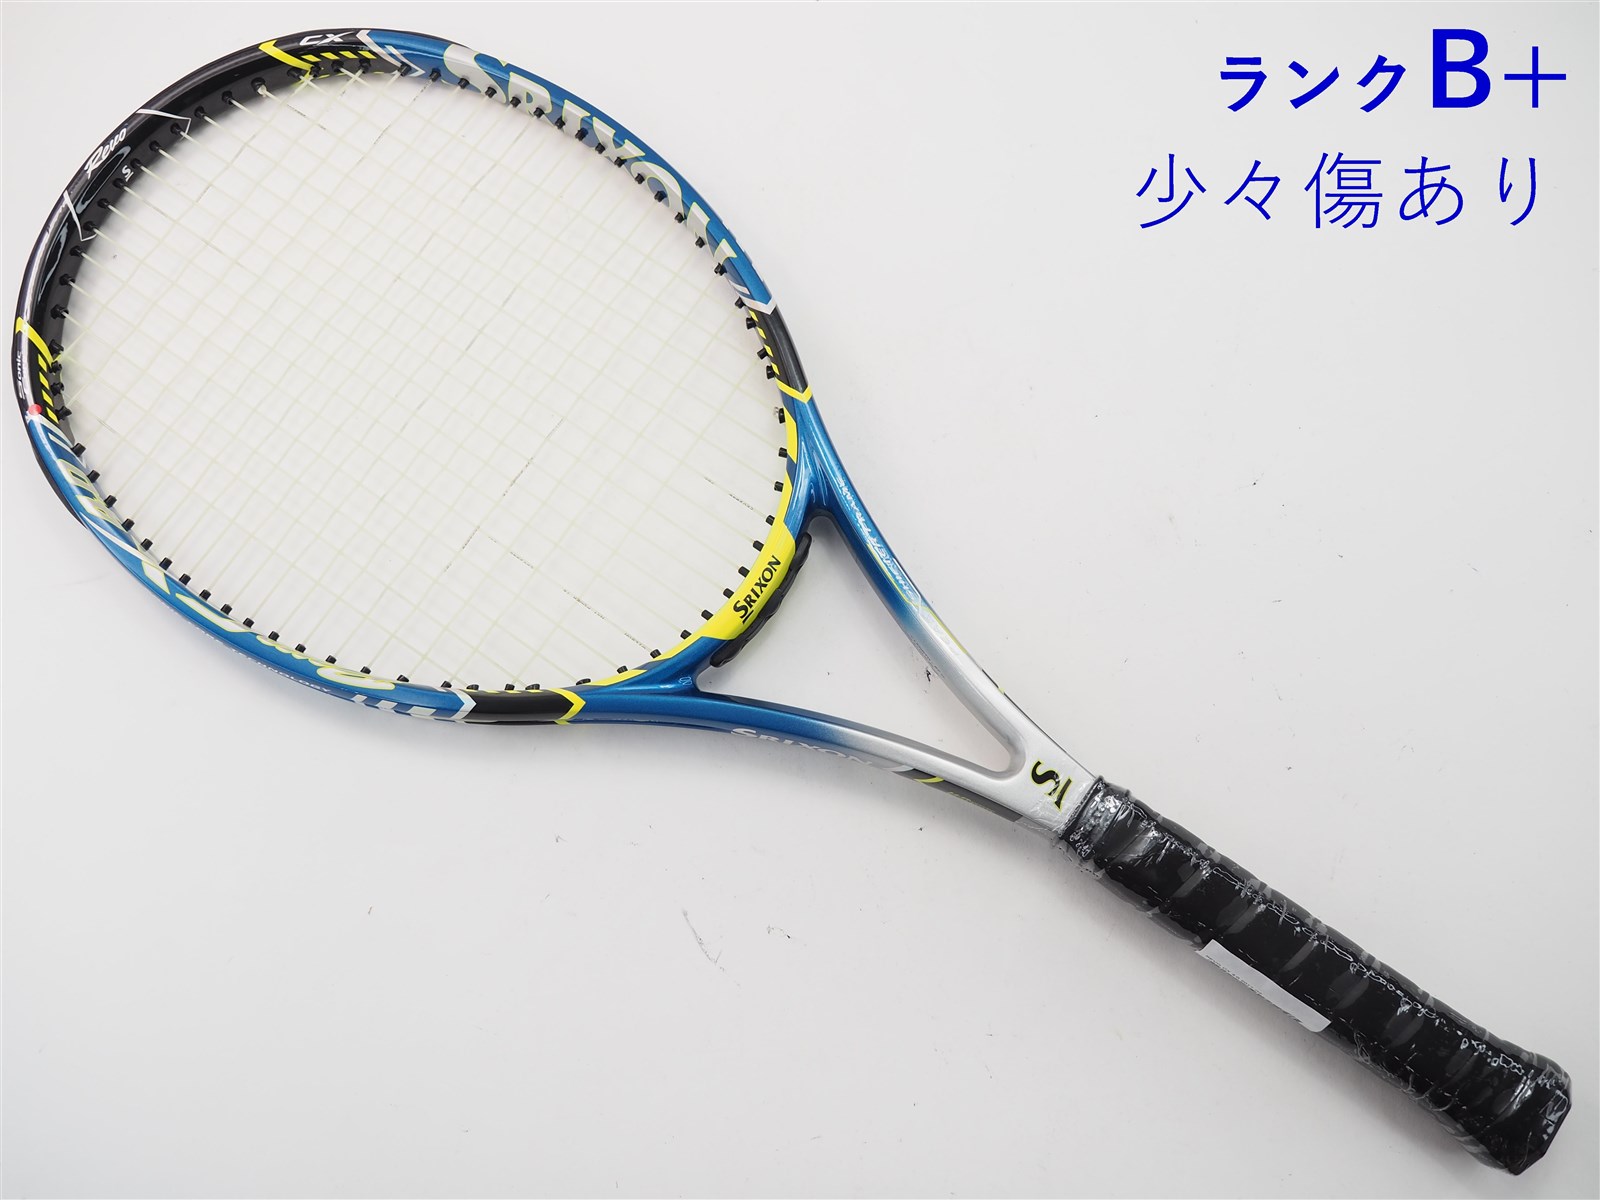 元グリップ交換済み付属品テニスラケット スリクソン レヴォ シーエックス 4.0 2015年モデル (G2)SRIXON REVO CX 4.0 2015